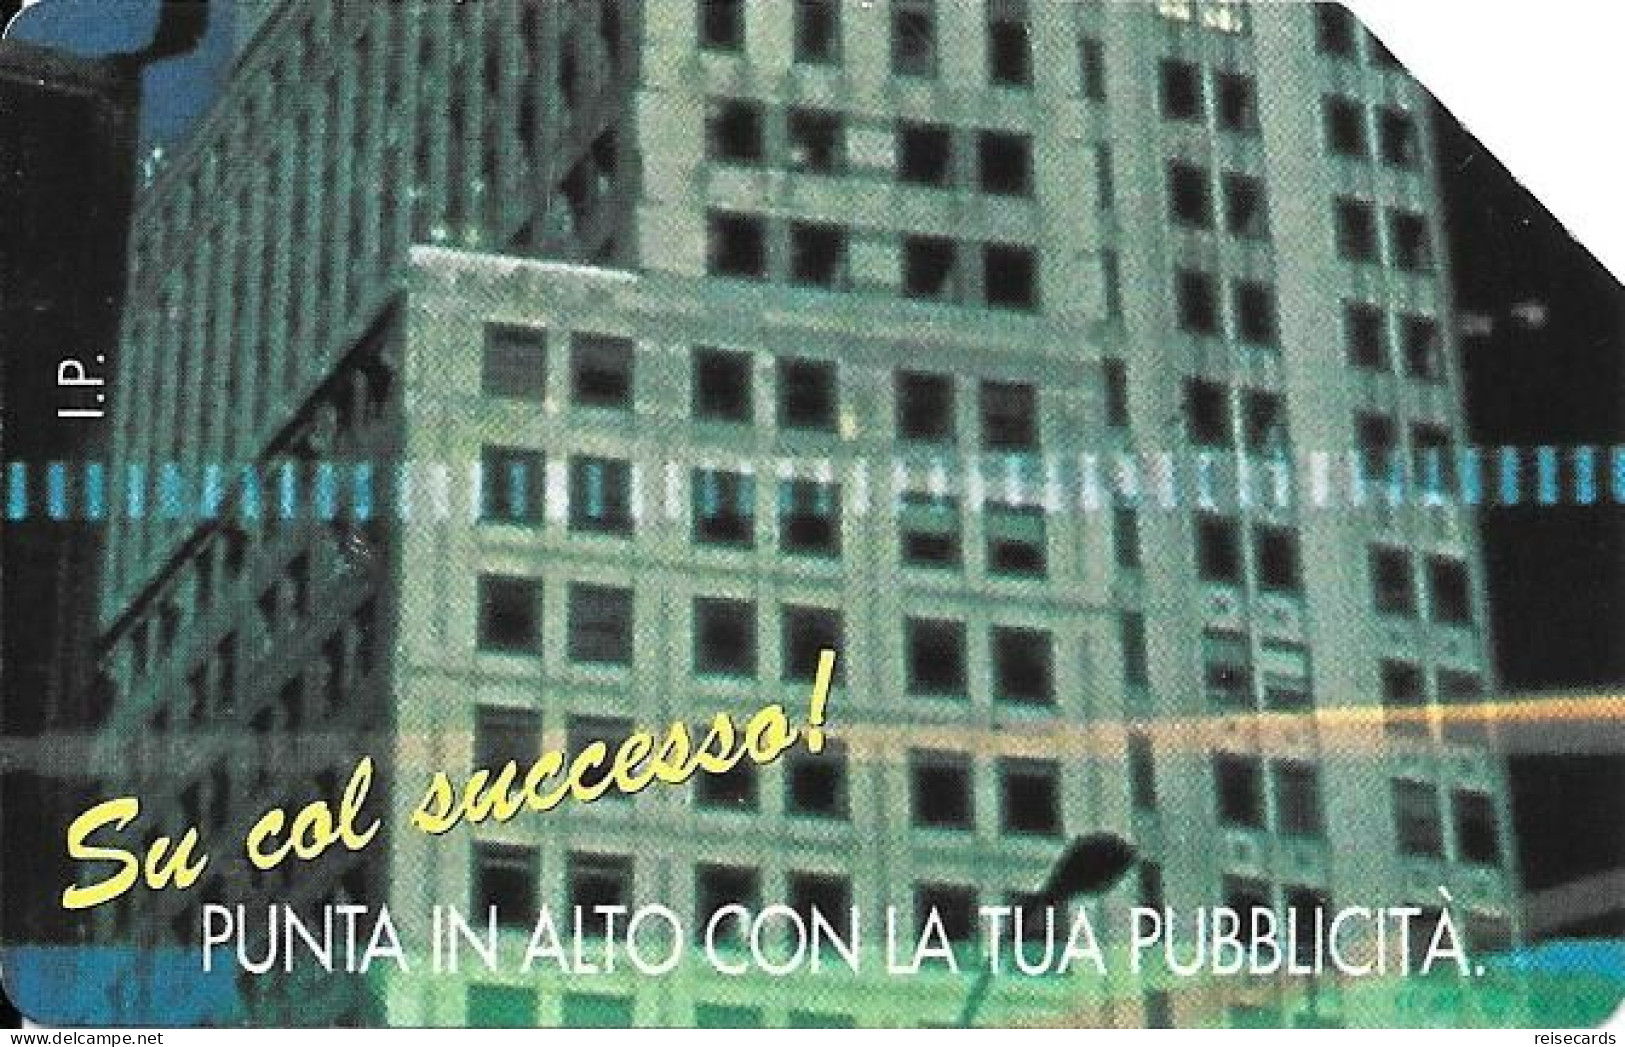 Italy: Telecom Italia - M.M. Pubblicità, Su Col Successo! - Public Advertising